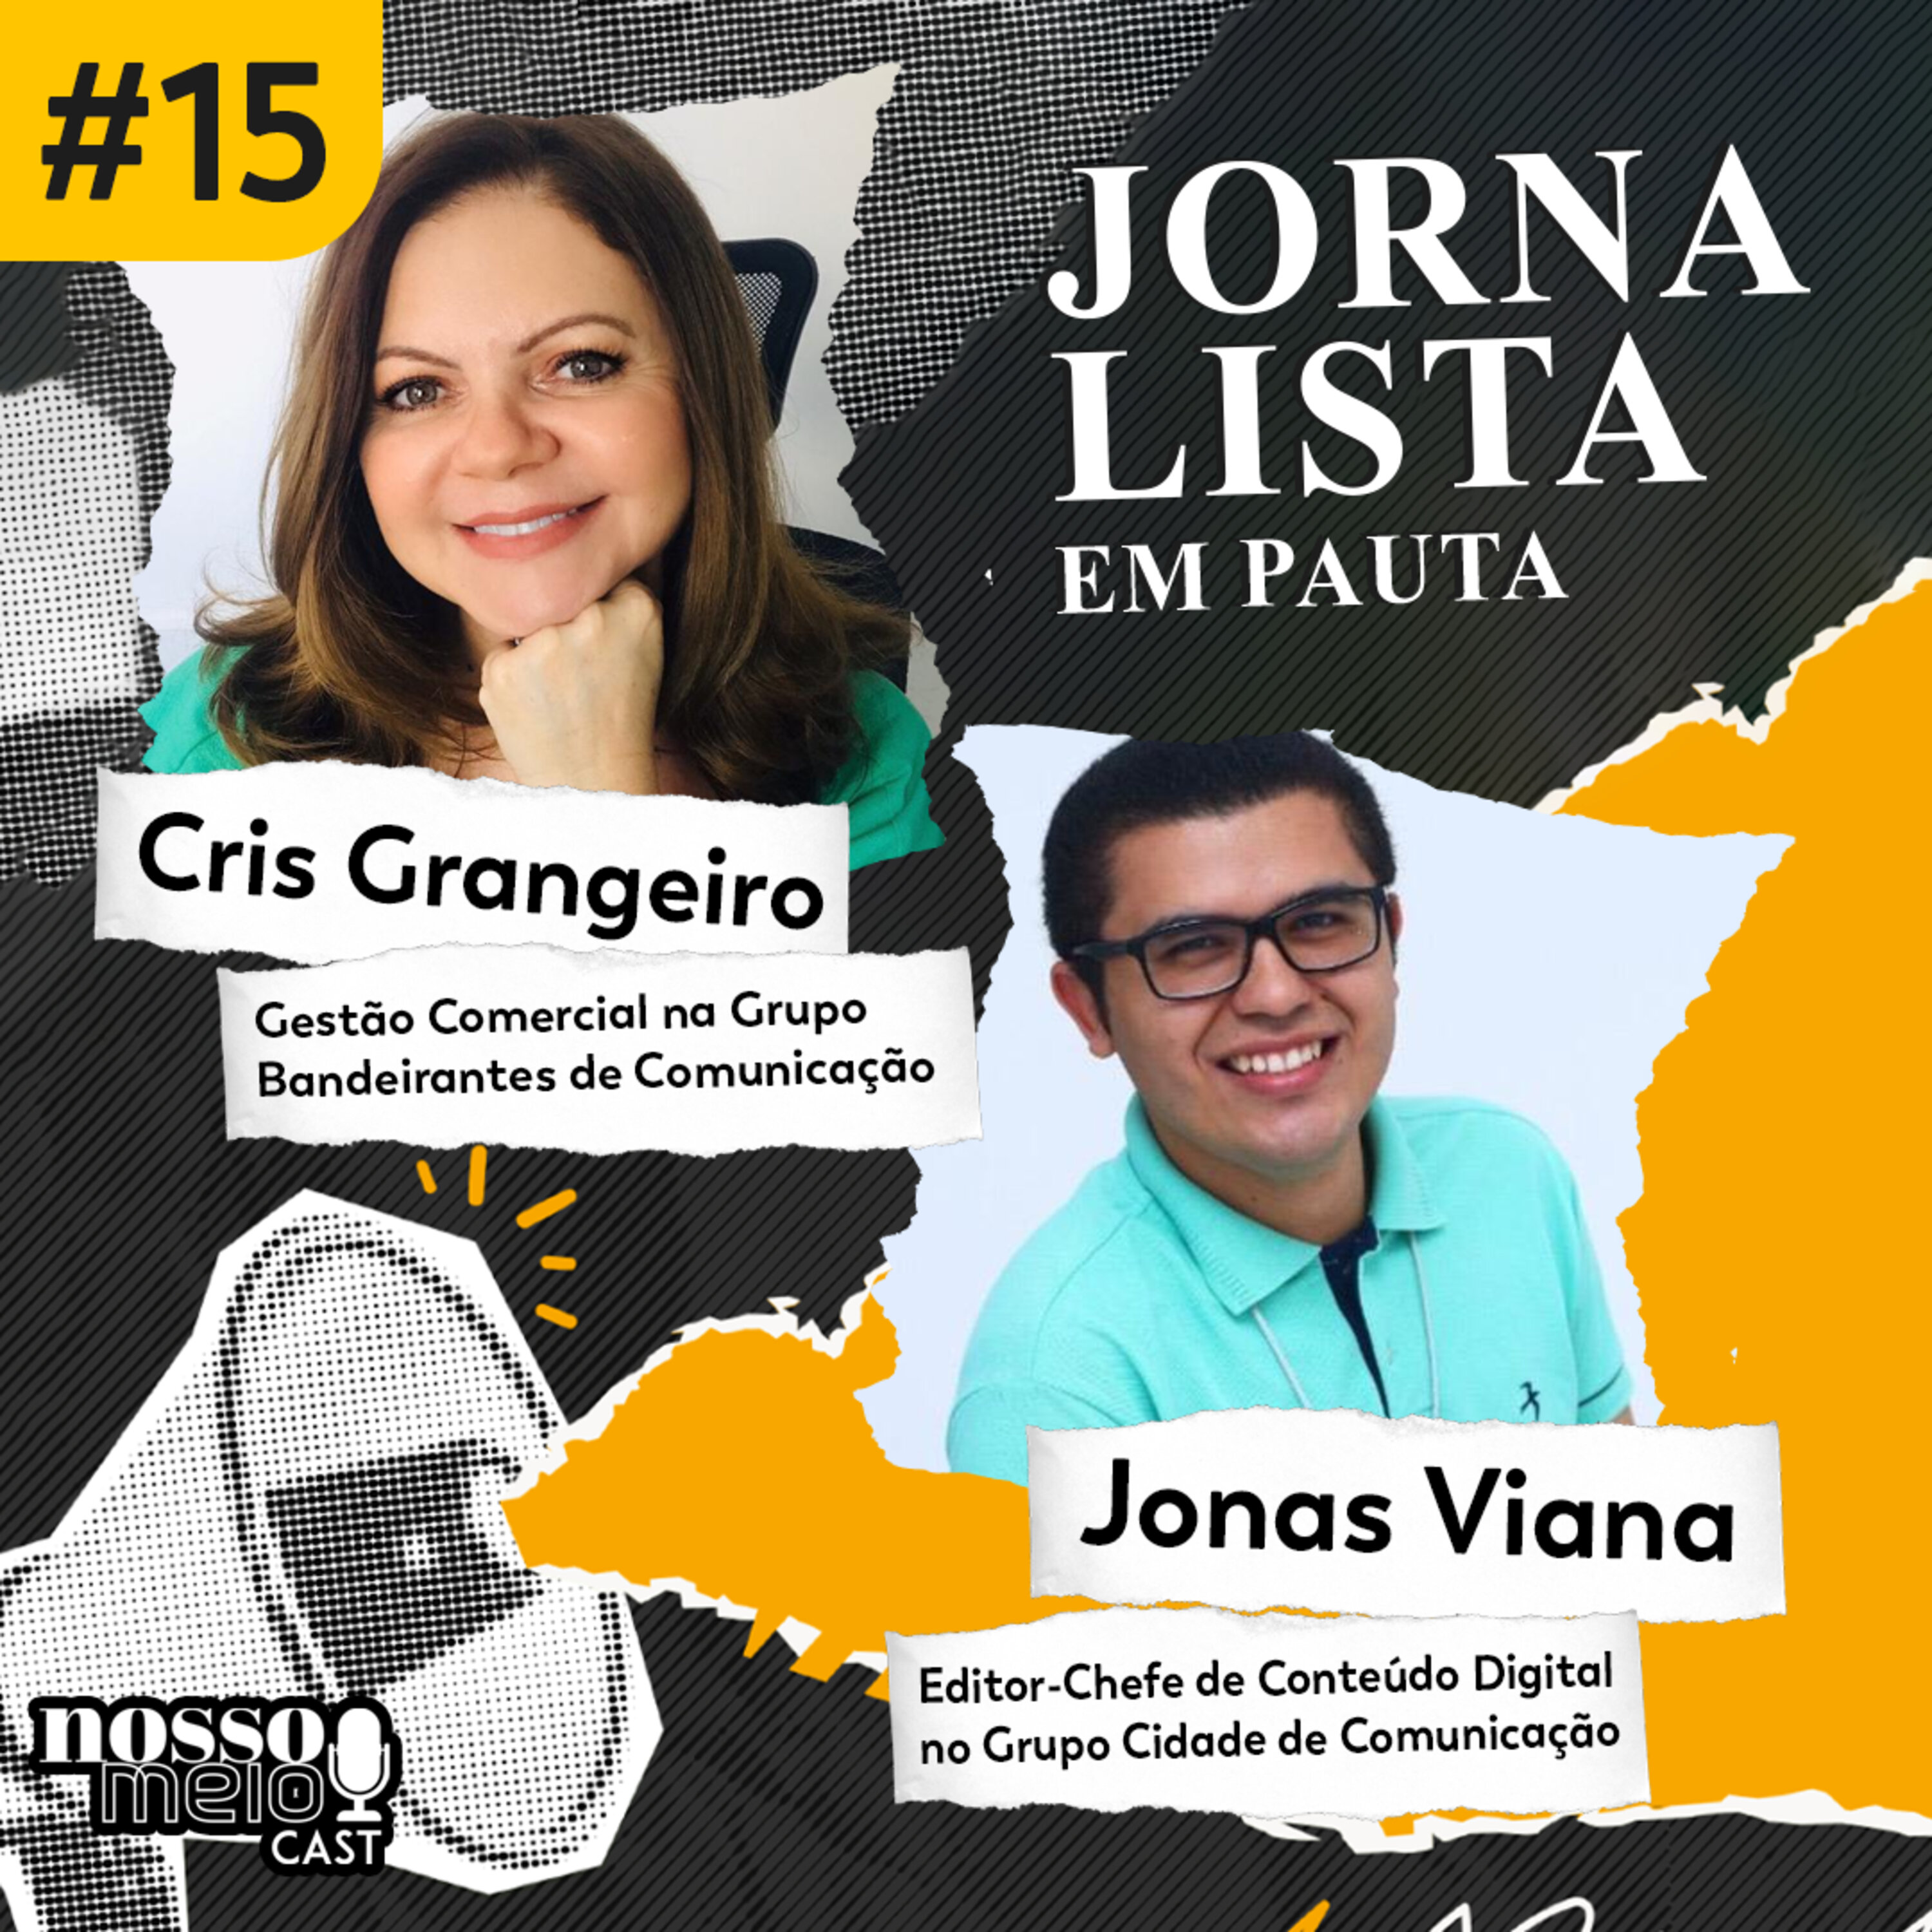 Nosso Meio Cast #15 - Jornalista em Pauta: O Futuro do Jornalismo: A digitalização da profissão